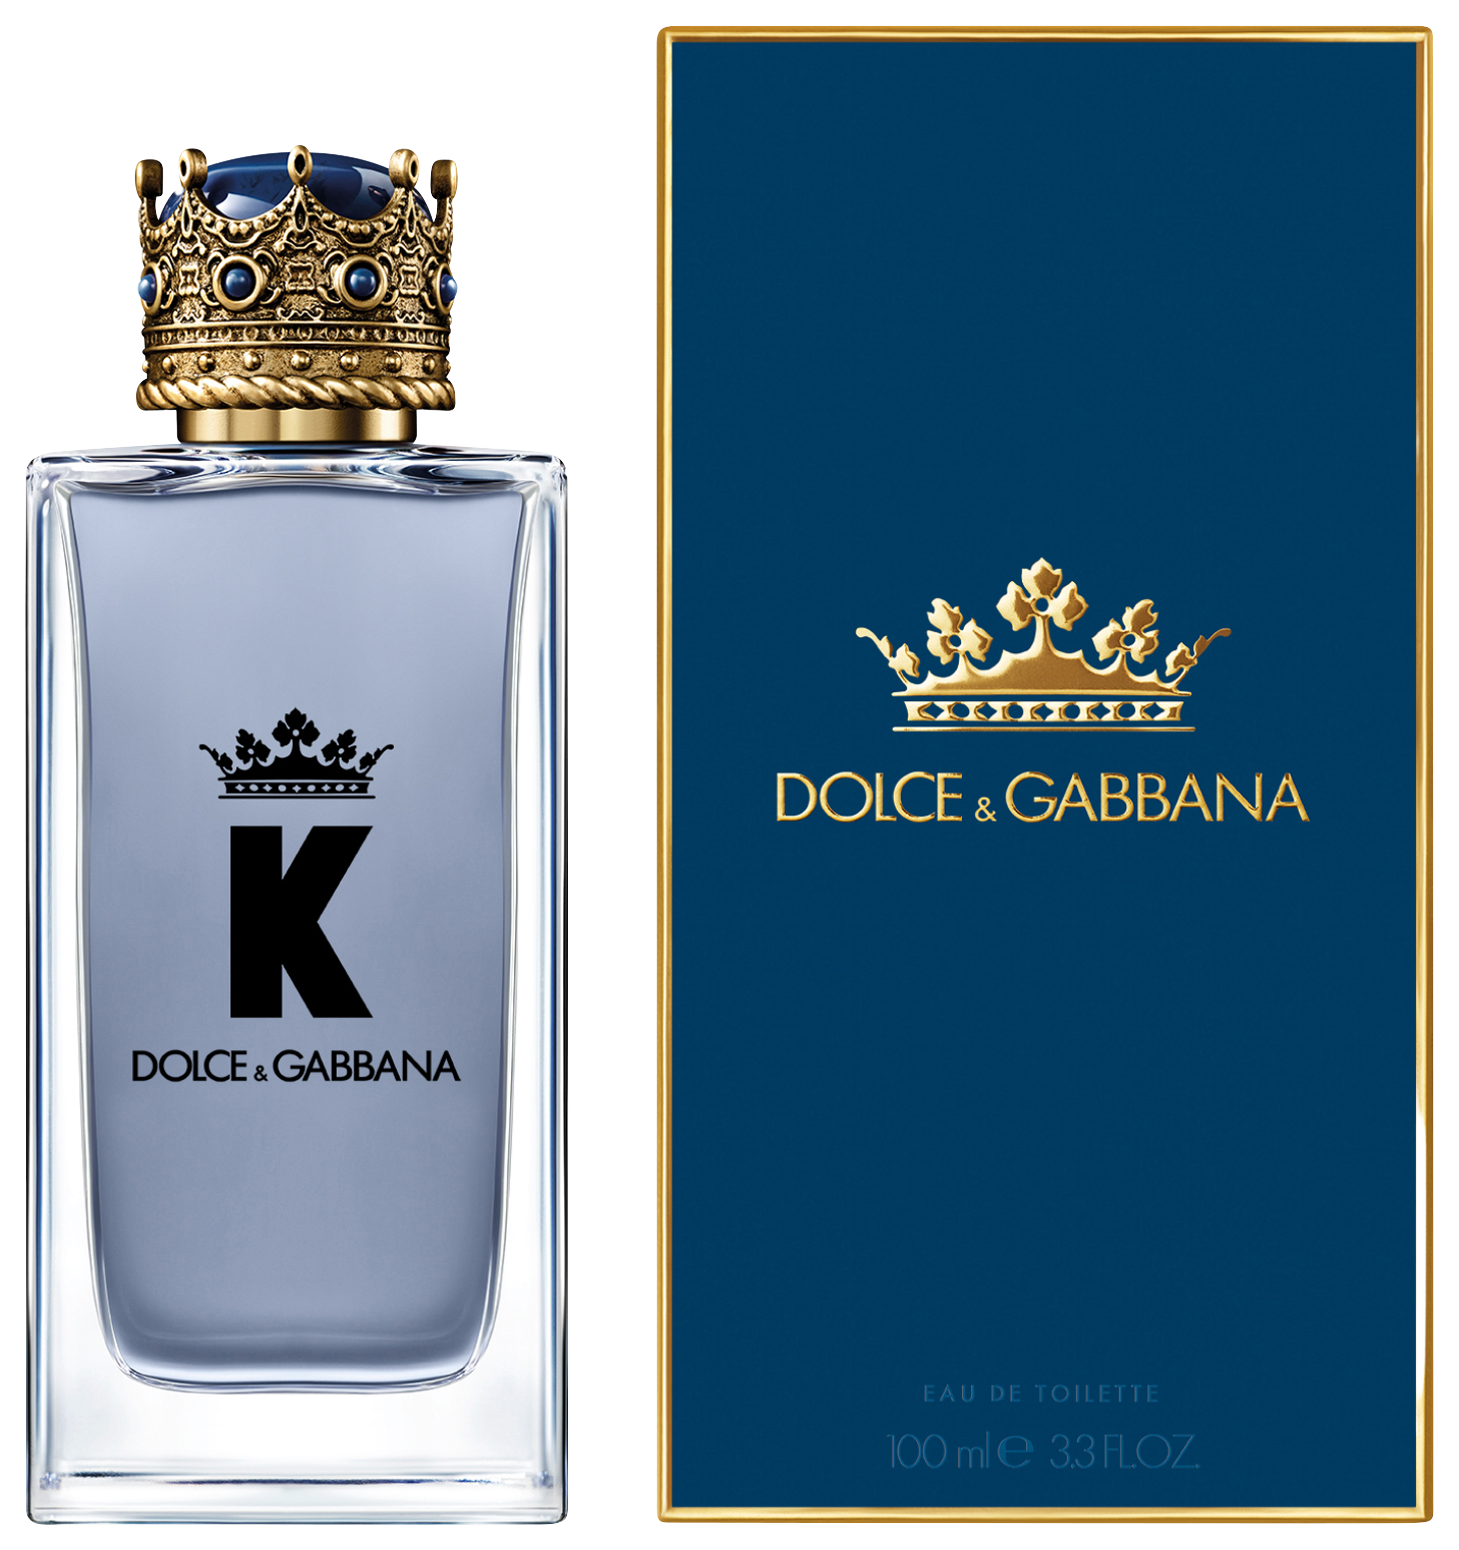 Dolce & Gabbana K by Dolce&Gabbana Eau de Toilette 100 ml